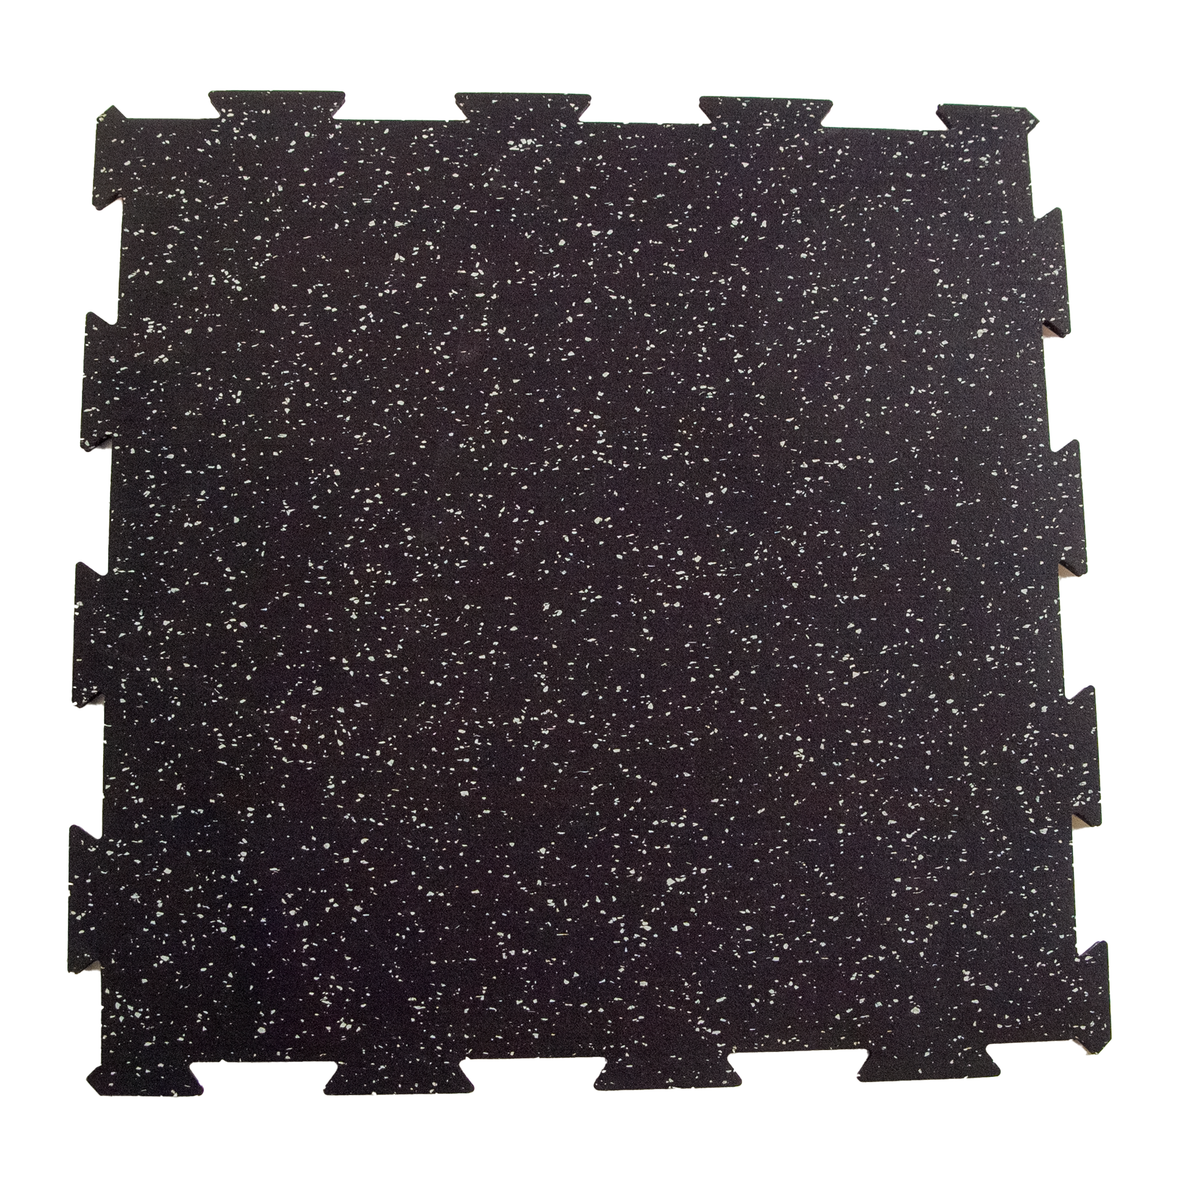 Fitway Rubber Floor Tile - 2&#39; x 2&#39;